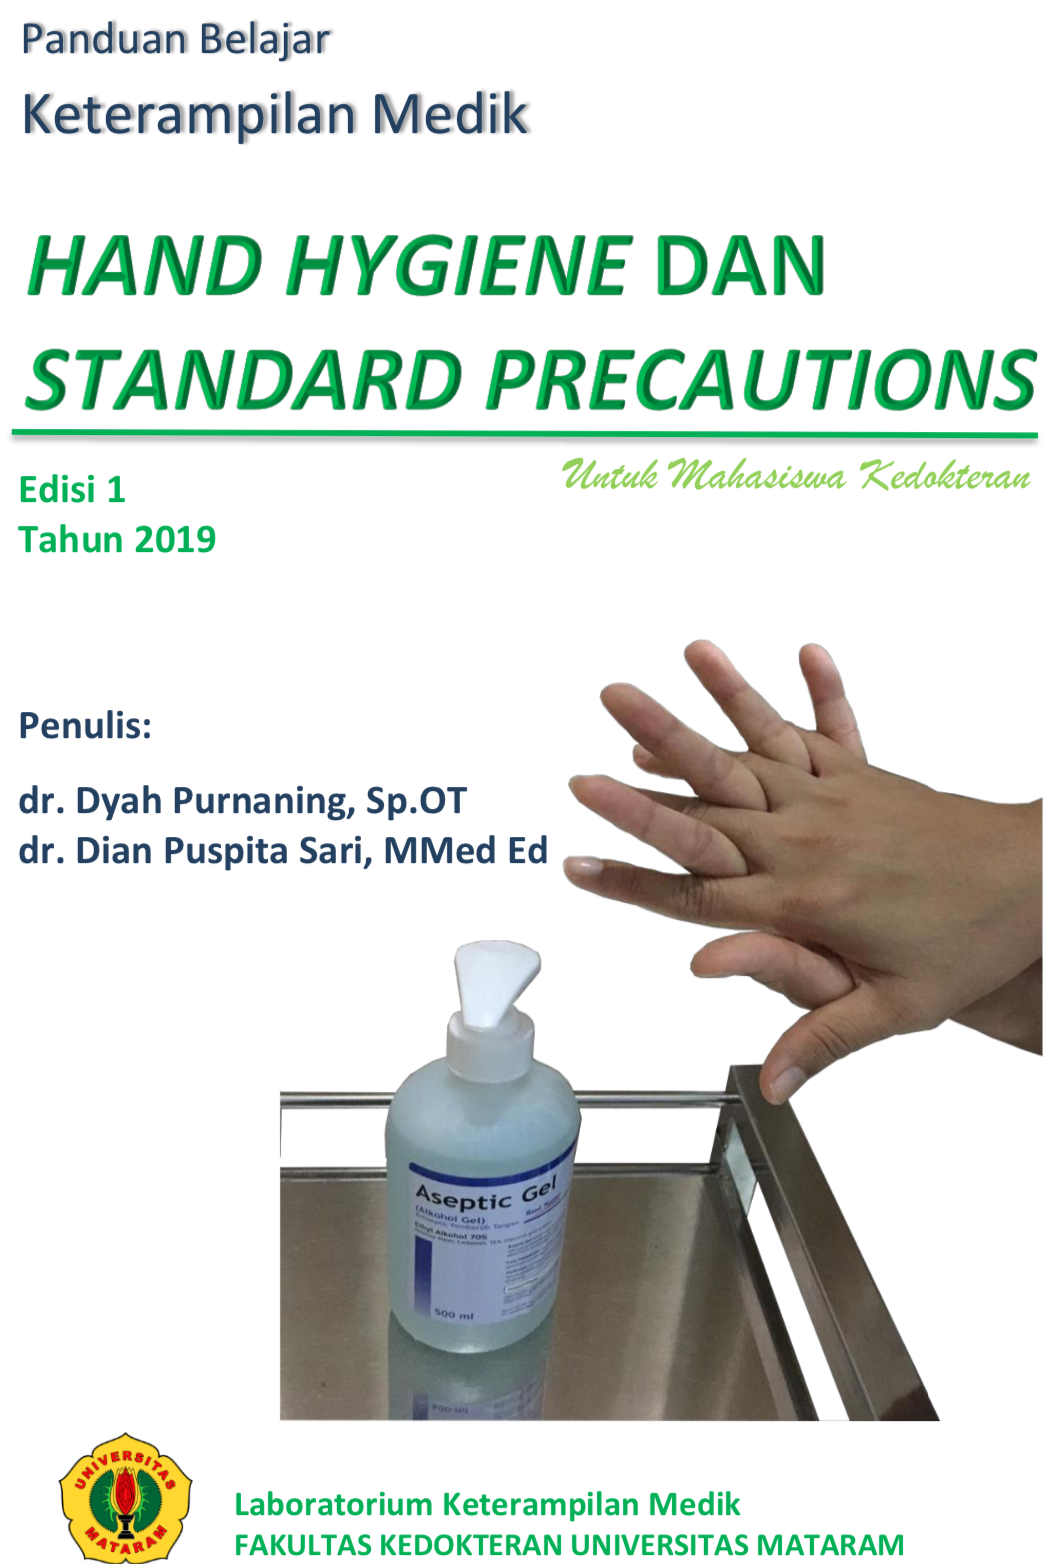 Keterampilan Medik Hand Hygiene dan Standart Precautions